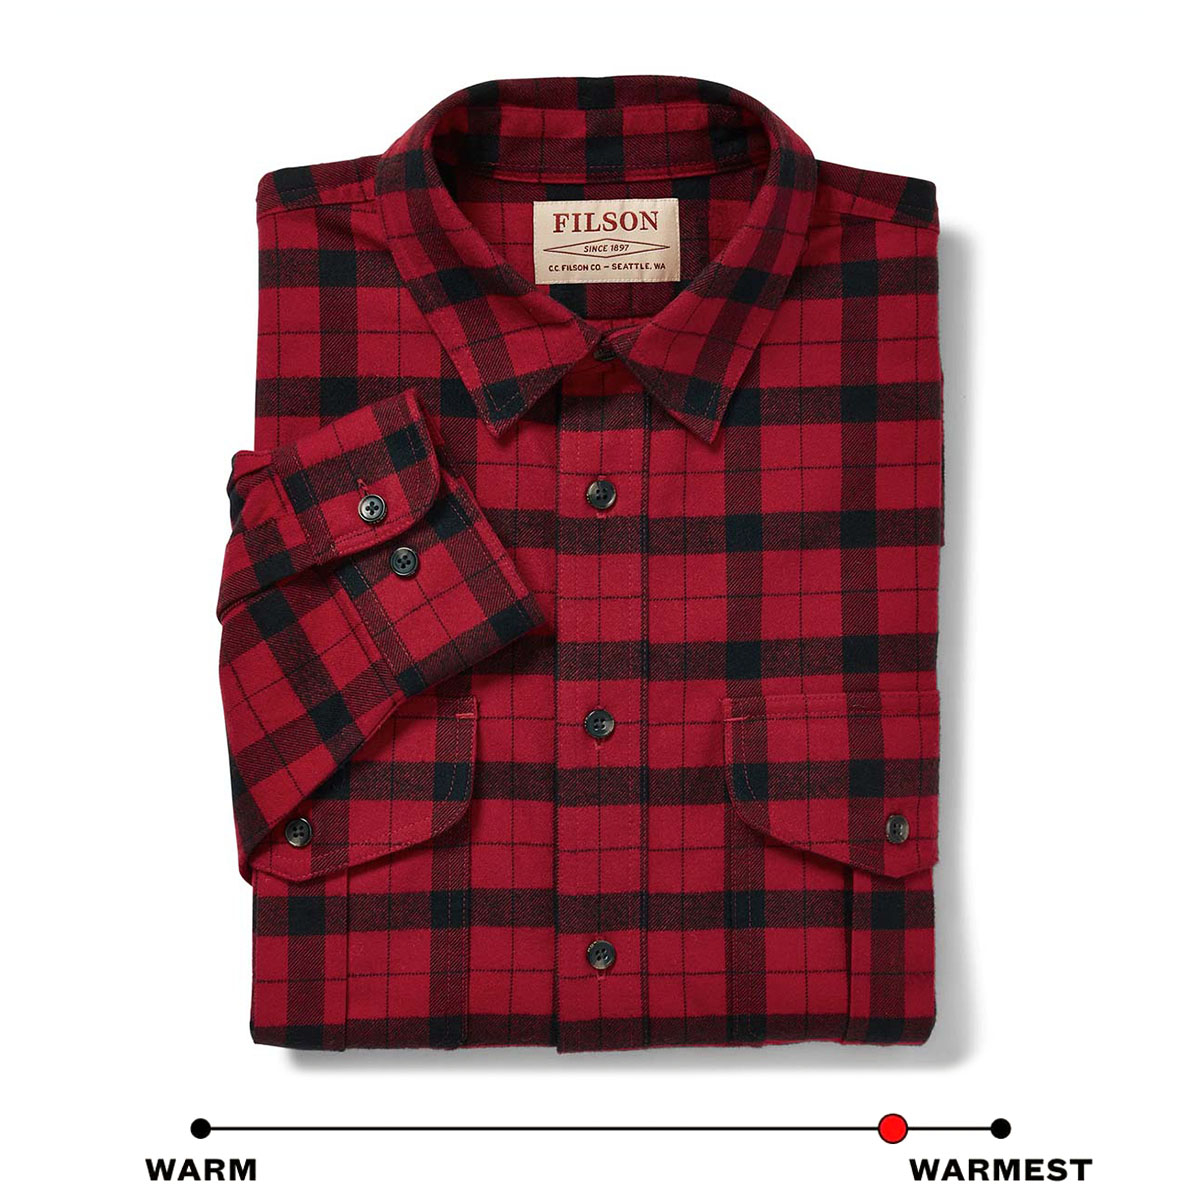 Filson Alaskan Guide Shirt Red Black, bietet unübertroffenen Komfort und Haltbarkeit, Saison für Saison